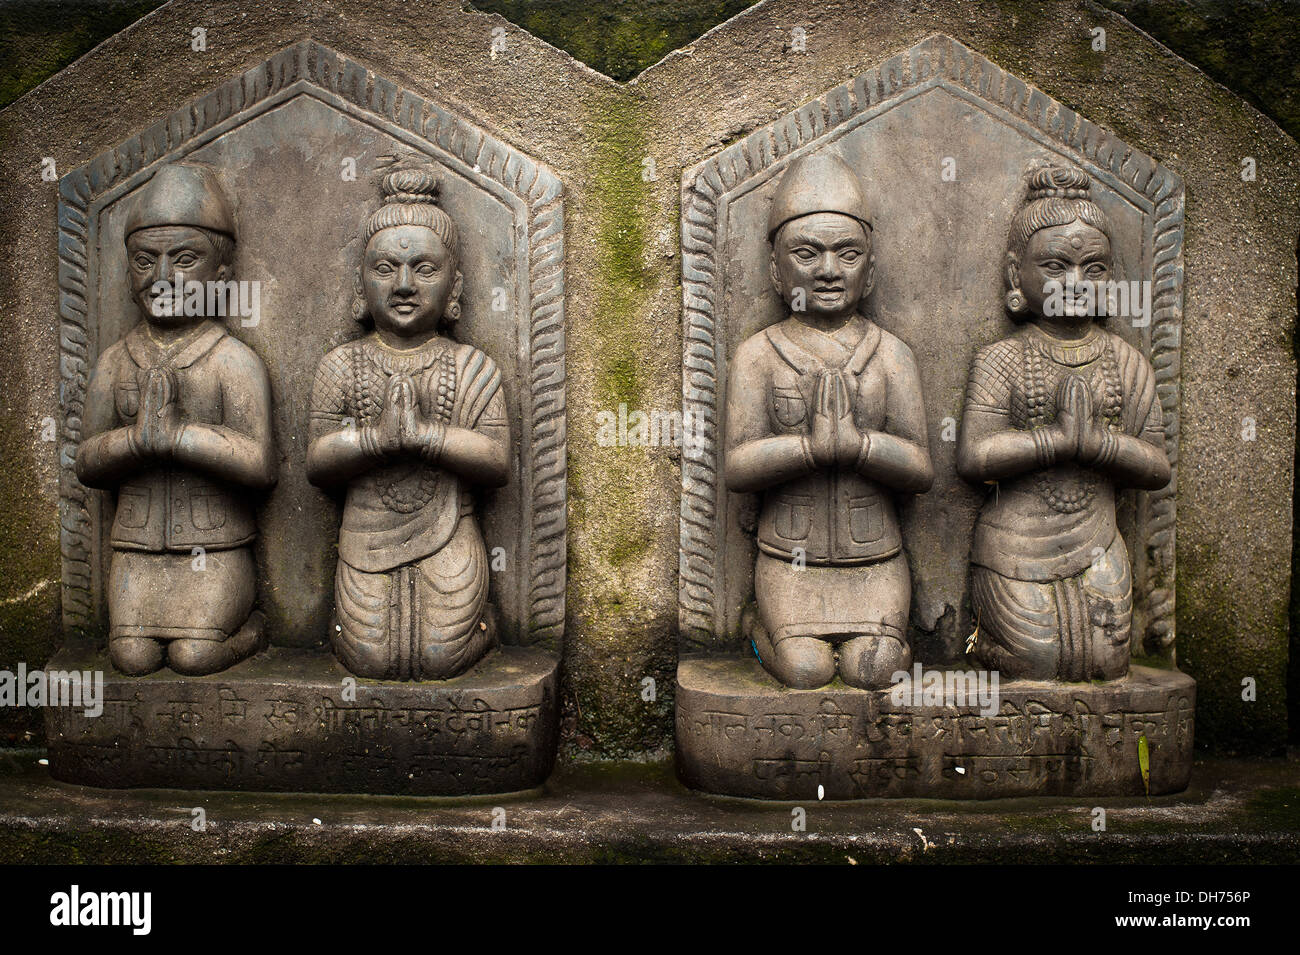 La scultura di pregare i popoli. I dettagli di architettura al santuario buddista di Swayambhunath Stupa. Monkey Temple Nepal, Kathmandu Foto Stock